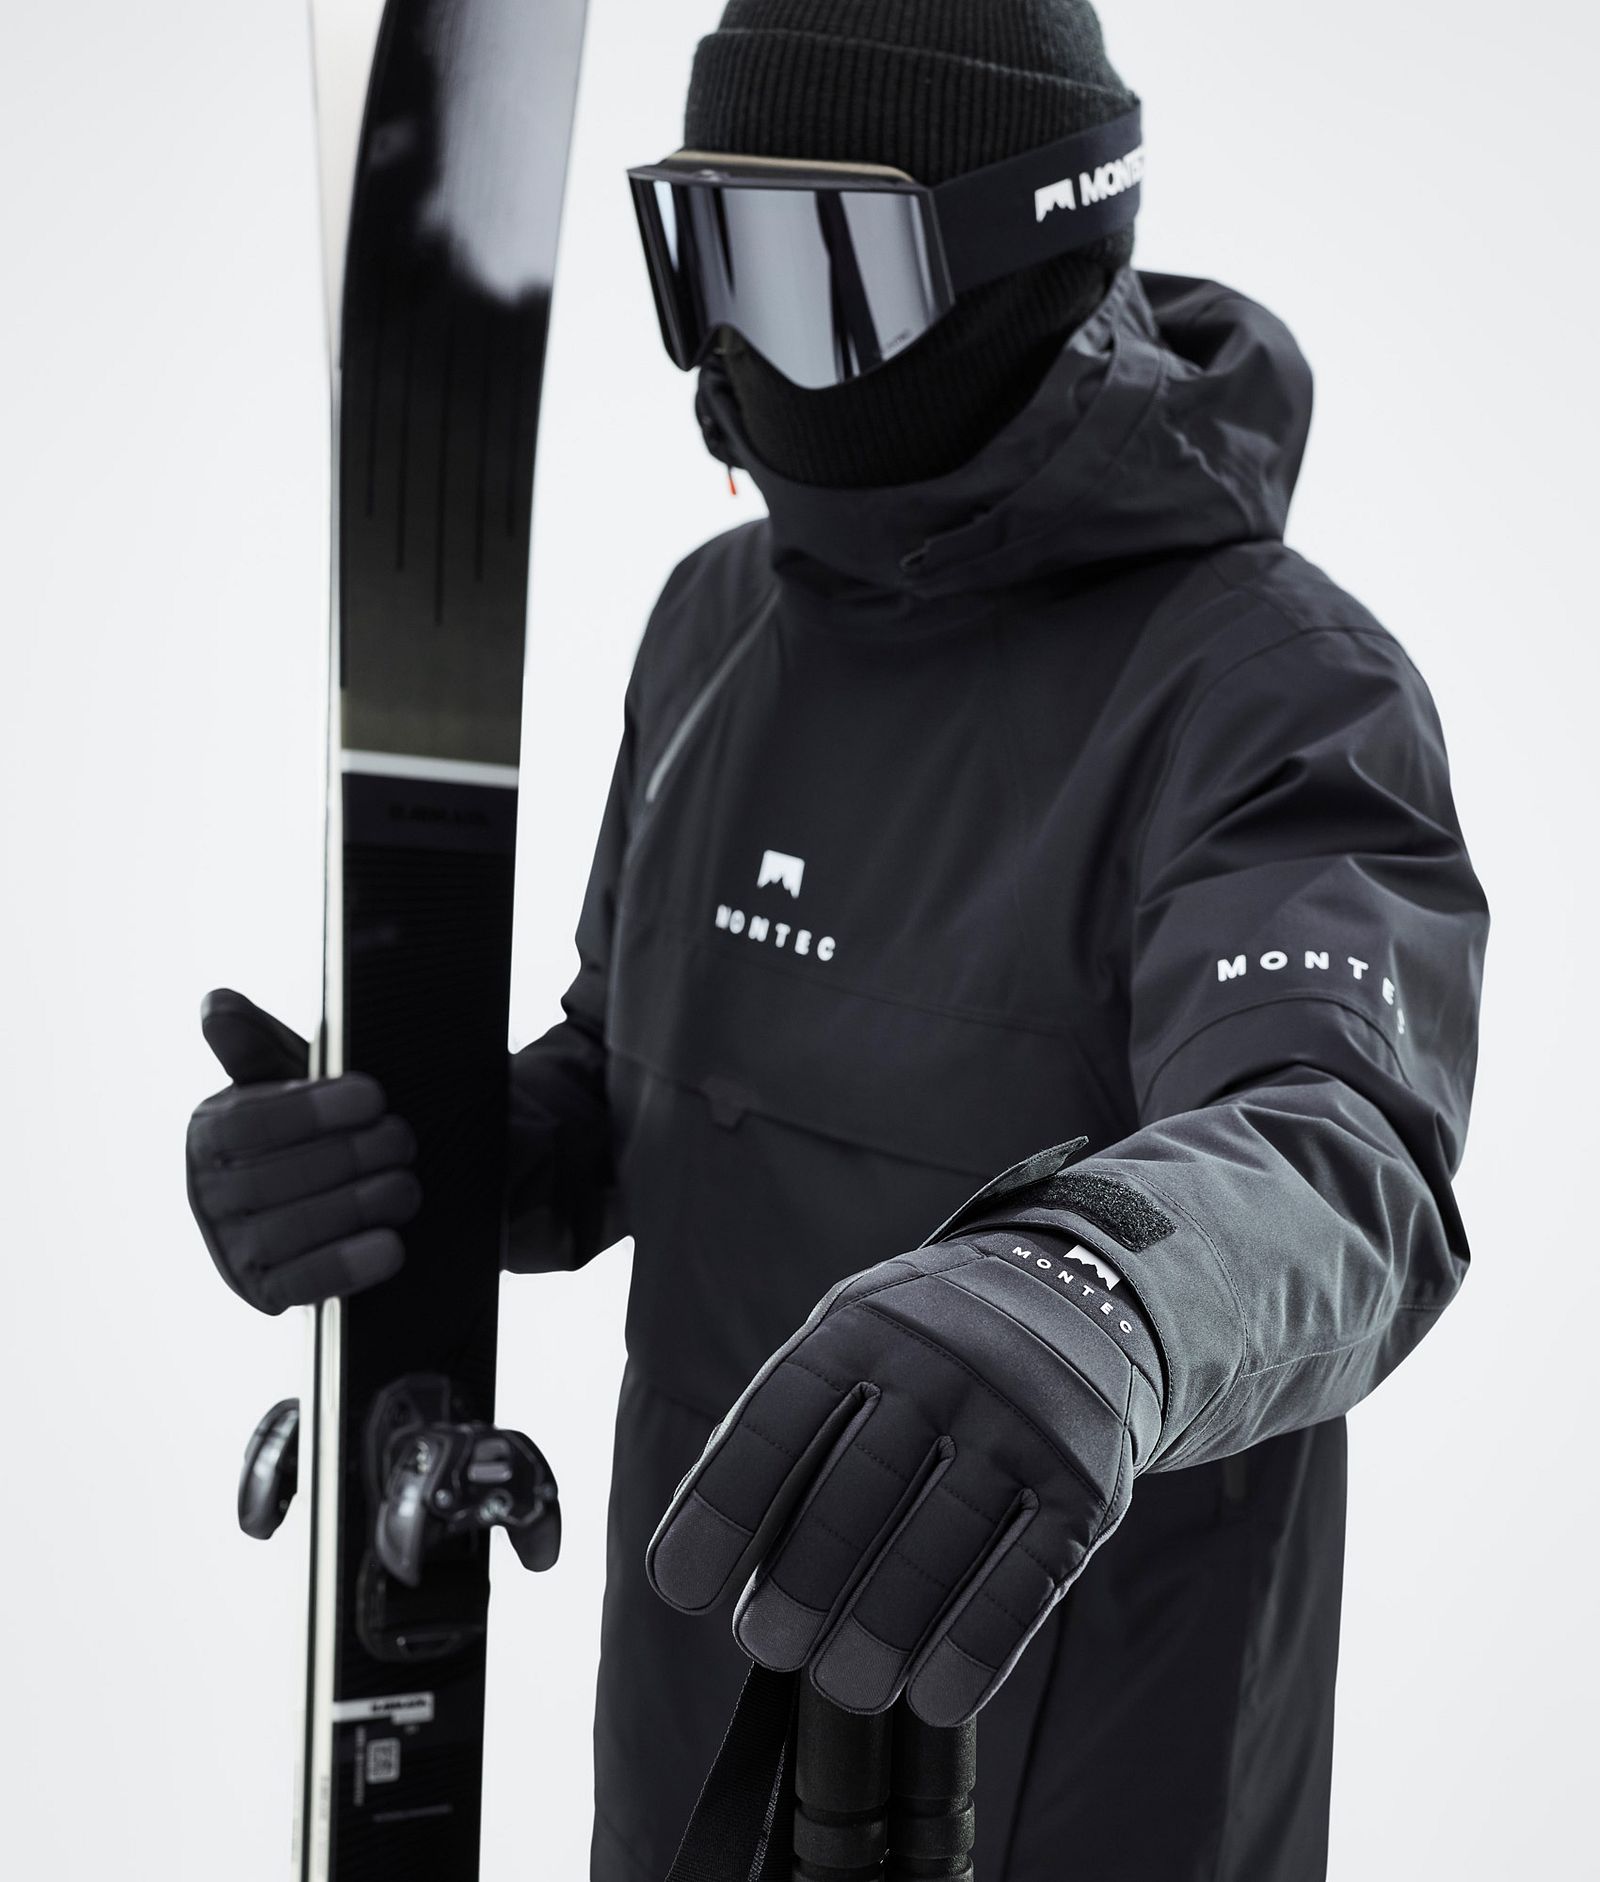 Kilo 2022 Ski Gloves Black, Image 3 of 5